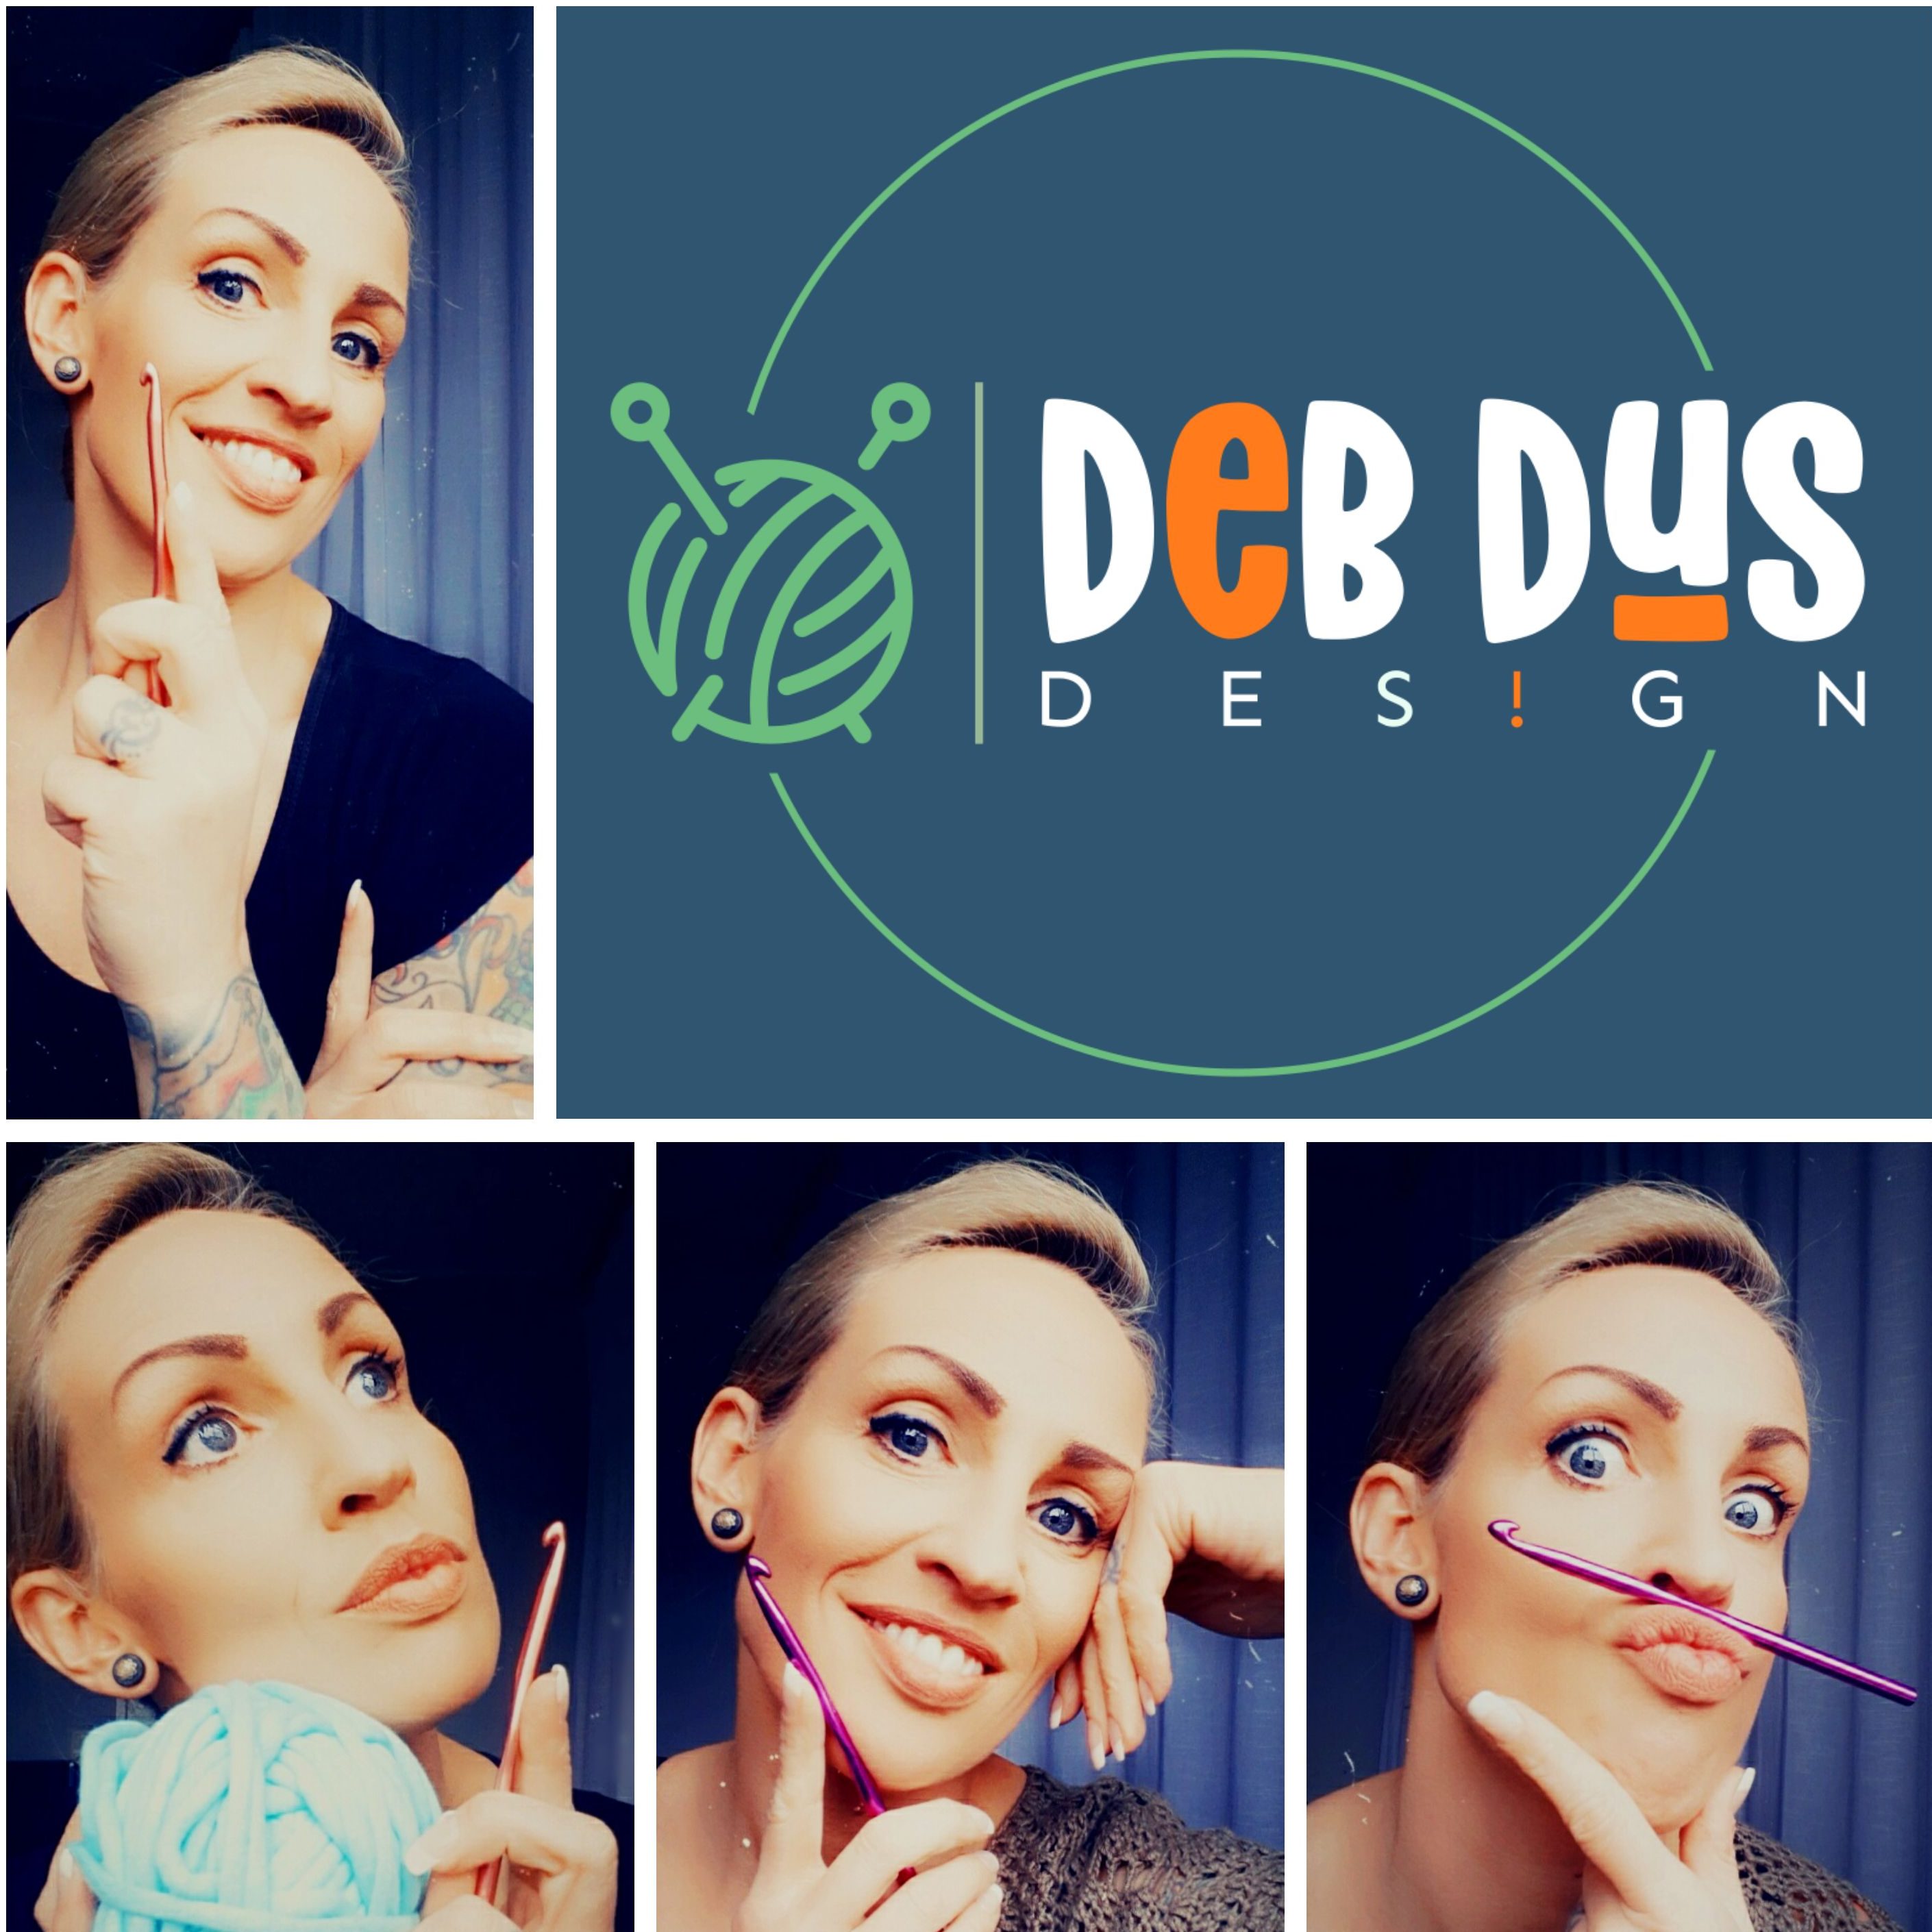 Deb Dus Design